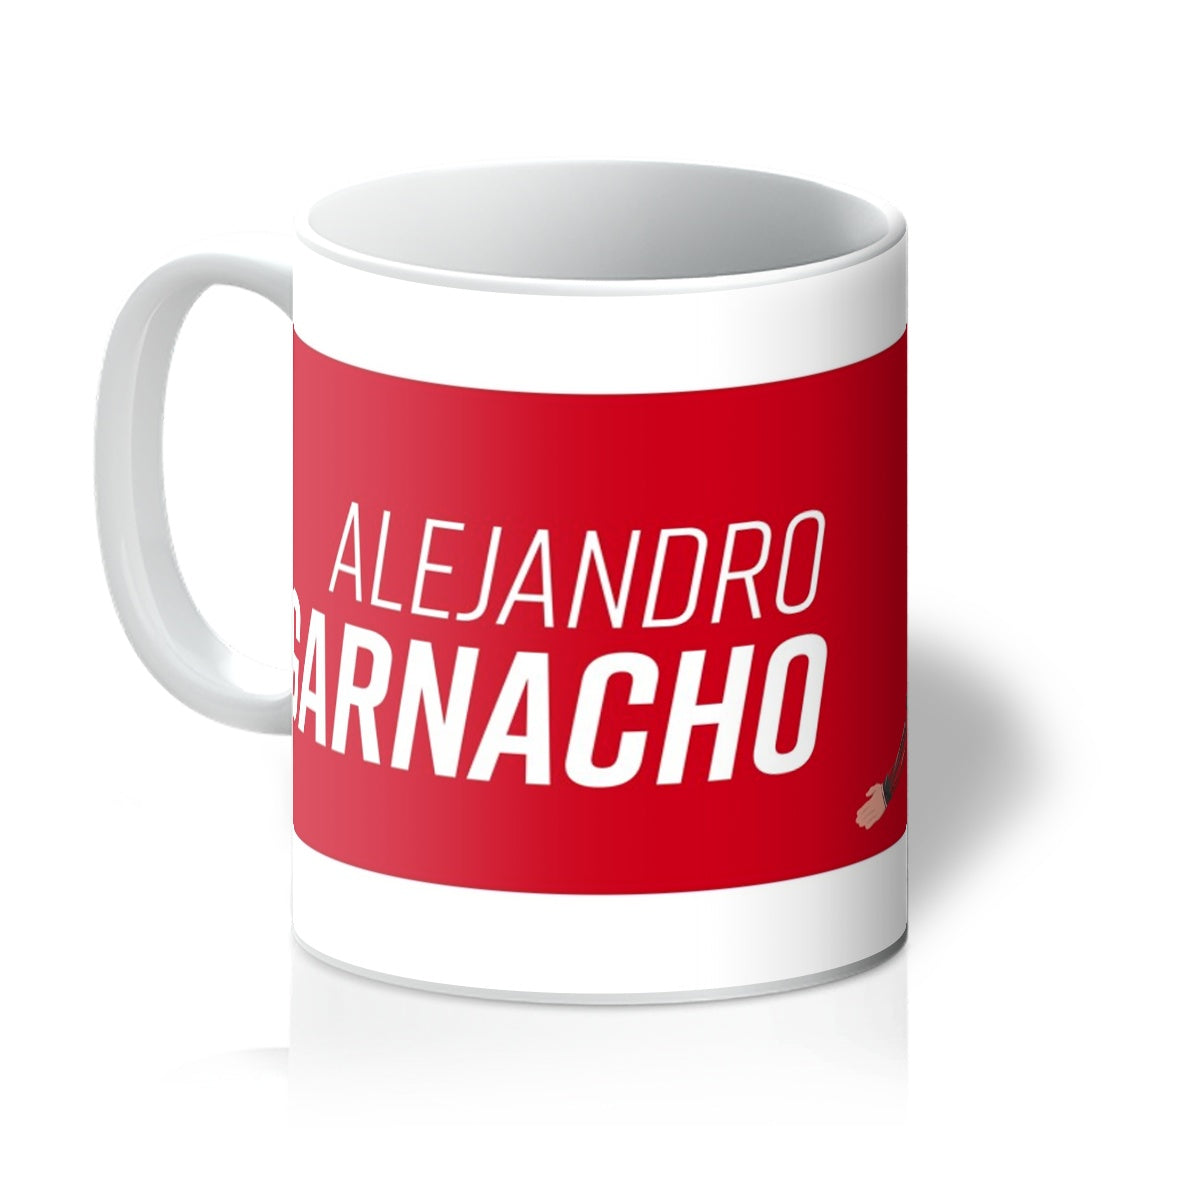 Alejandro Garnacho Manchester United 11oz Mug KDDesigns6